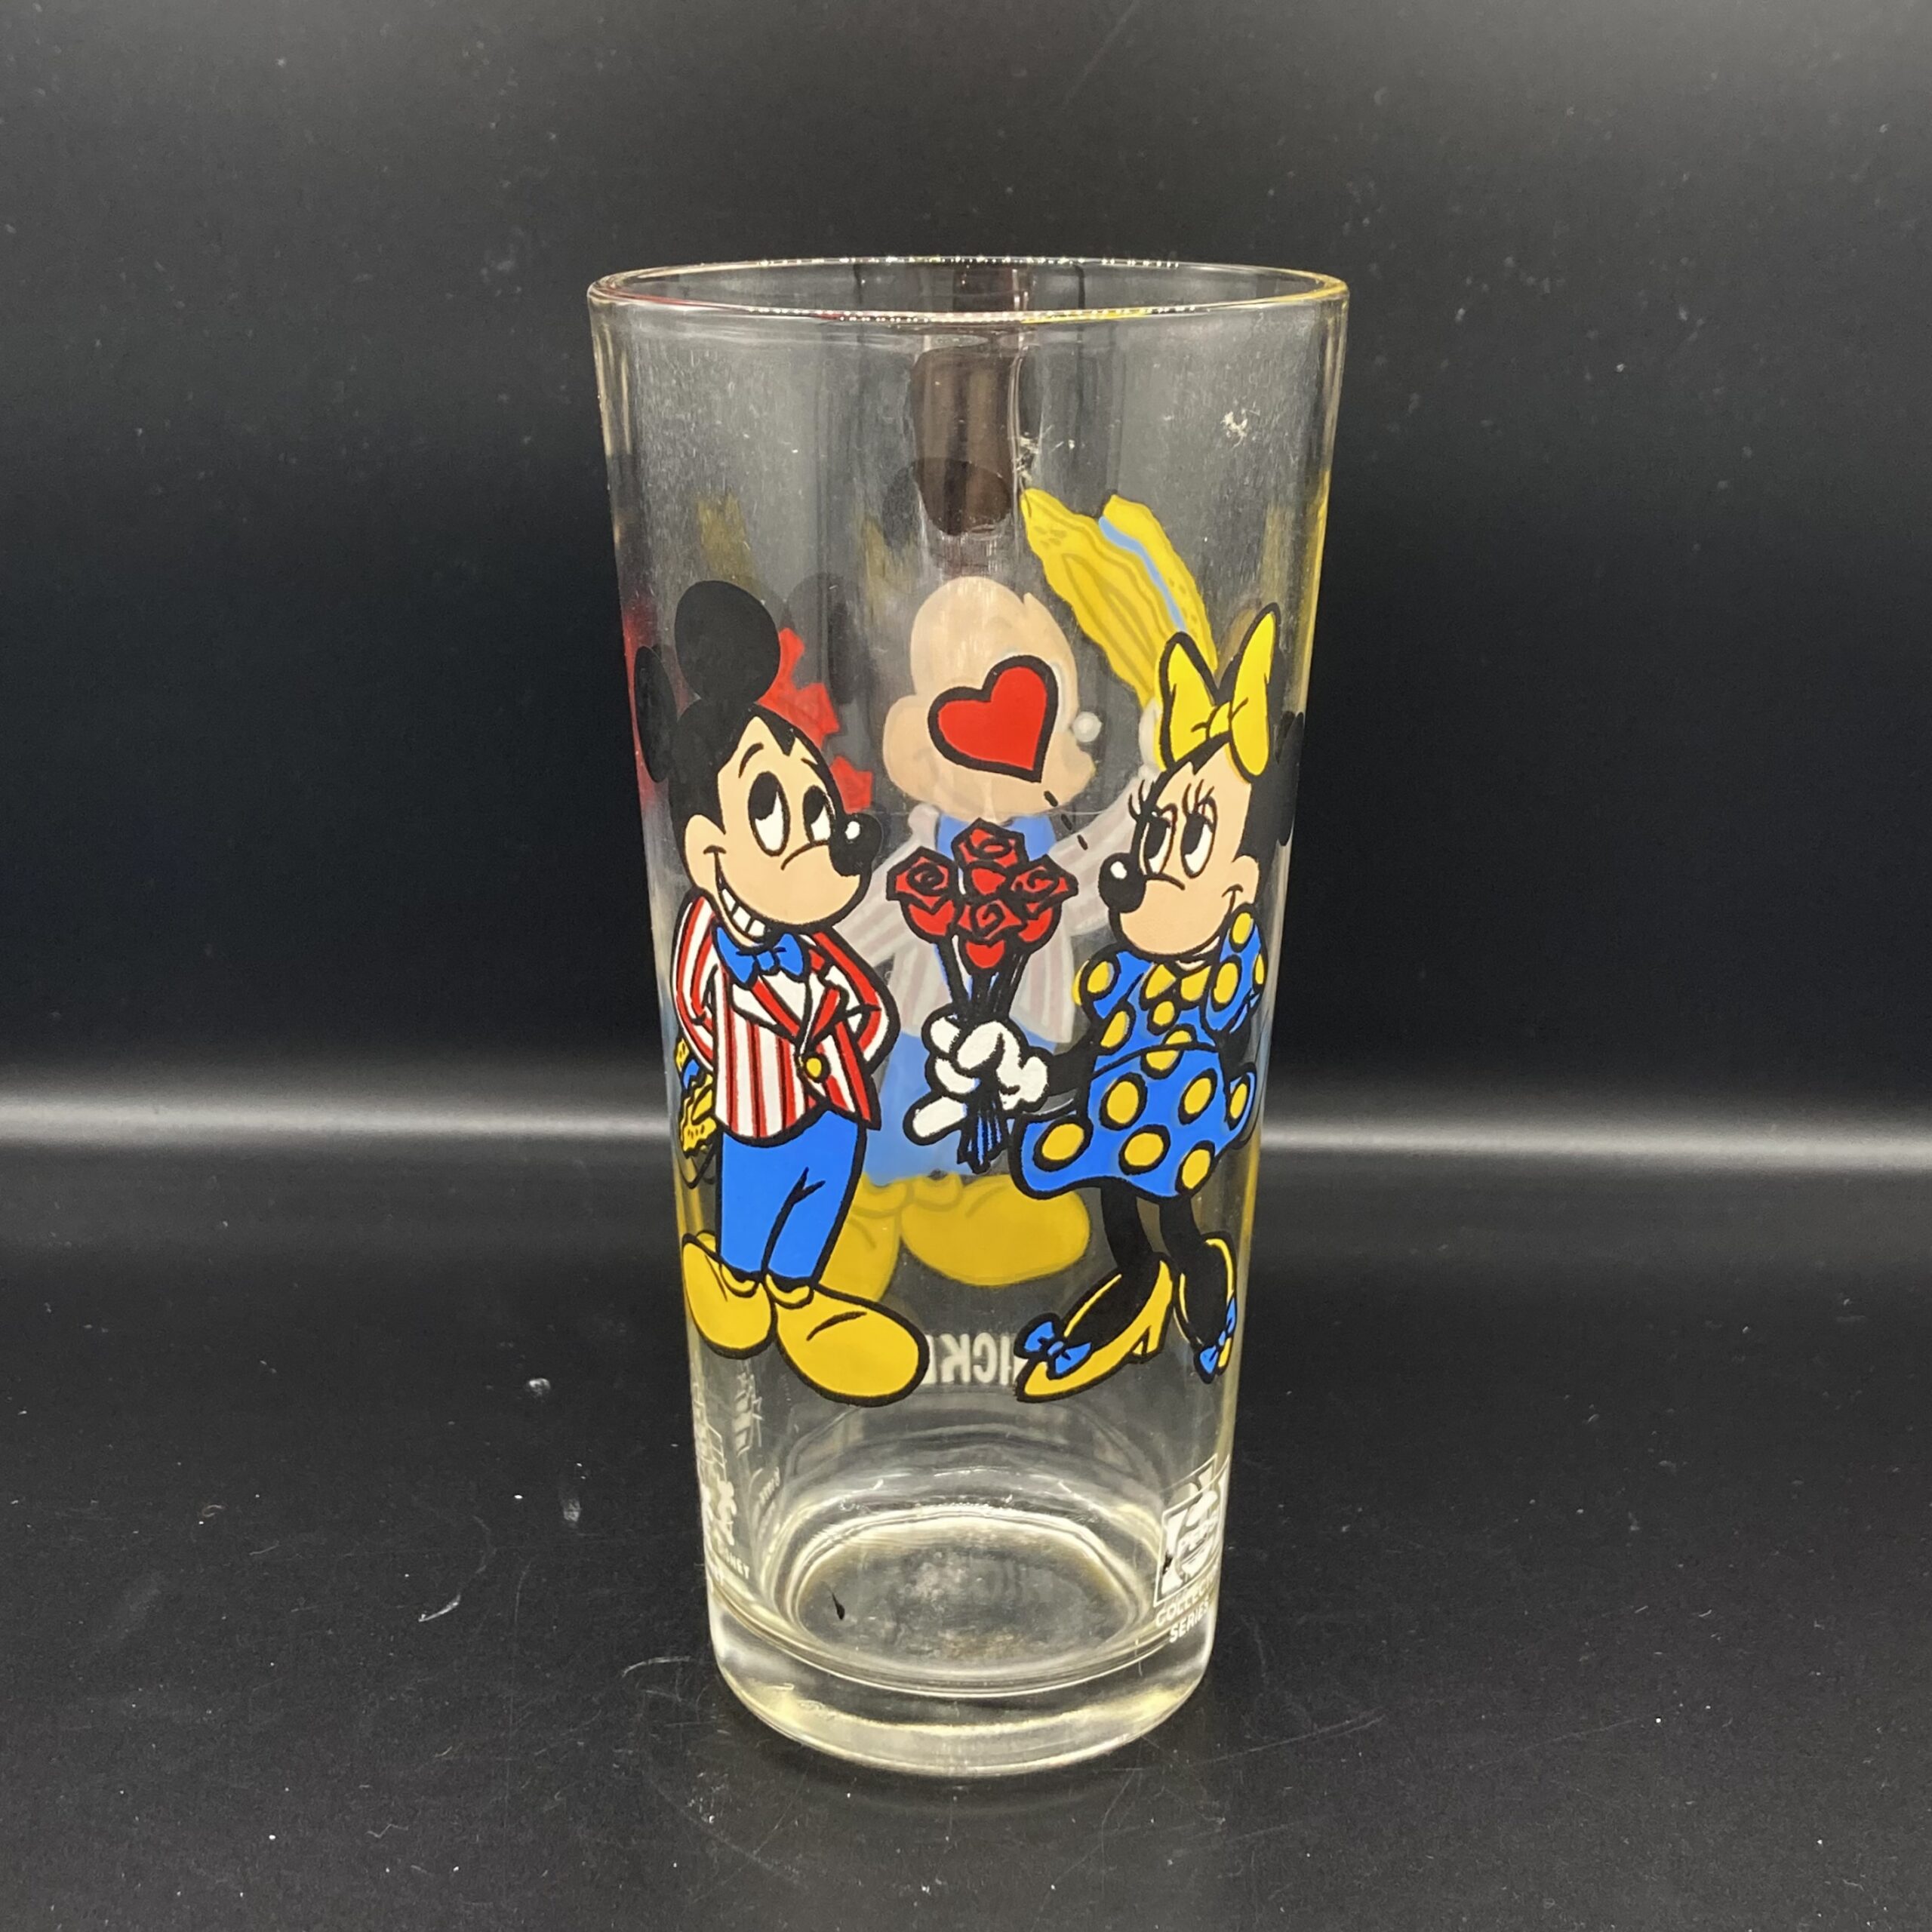 年 's Pepsi Collector Series Glass “Mickey” ペプシ